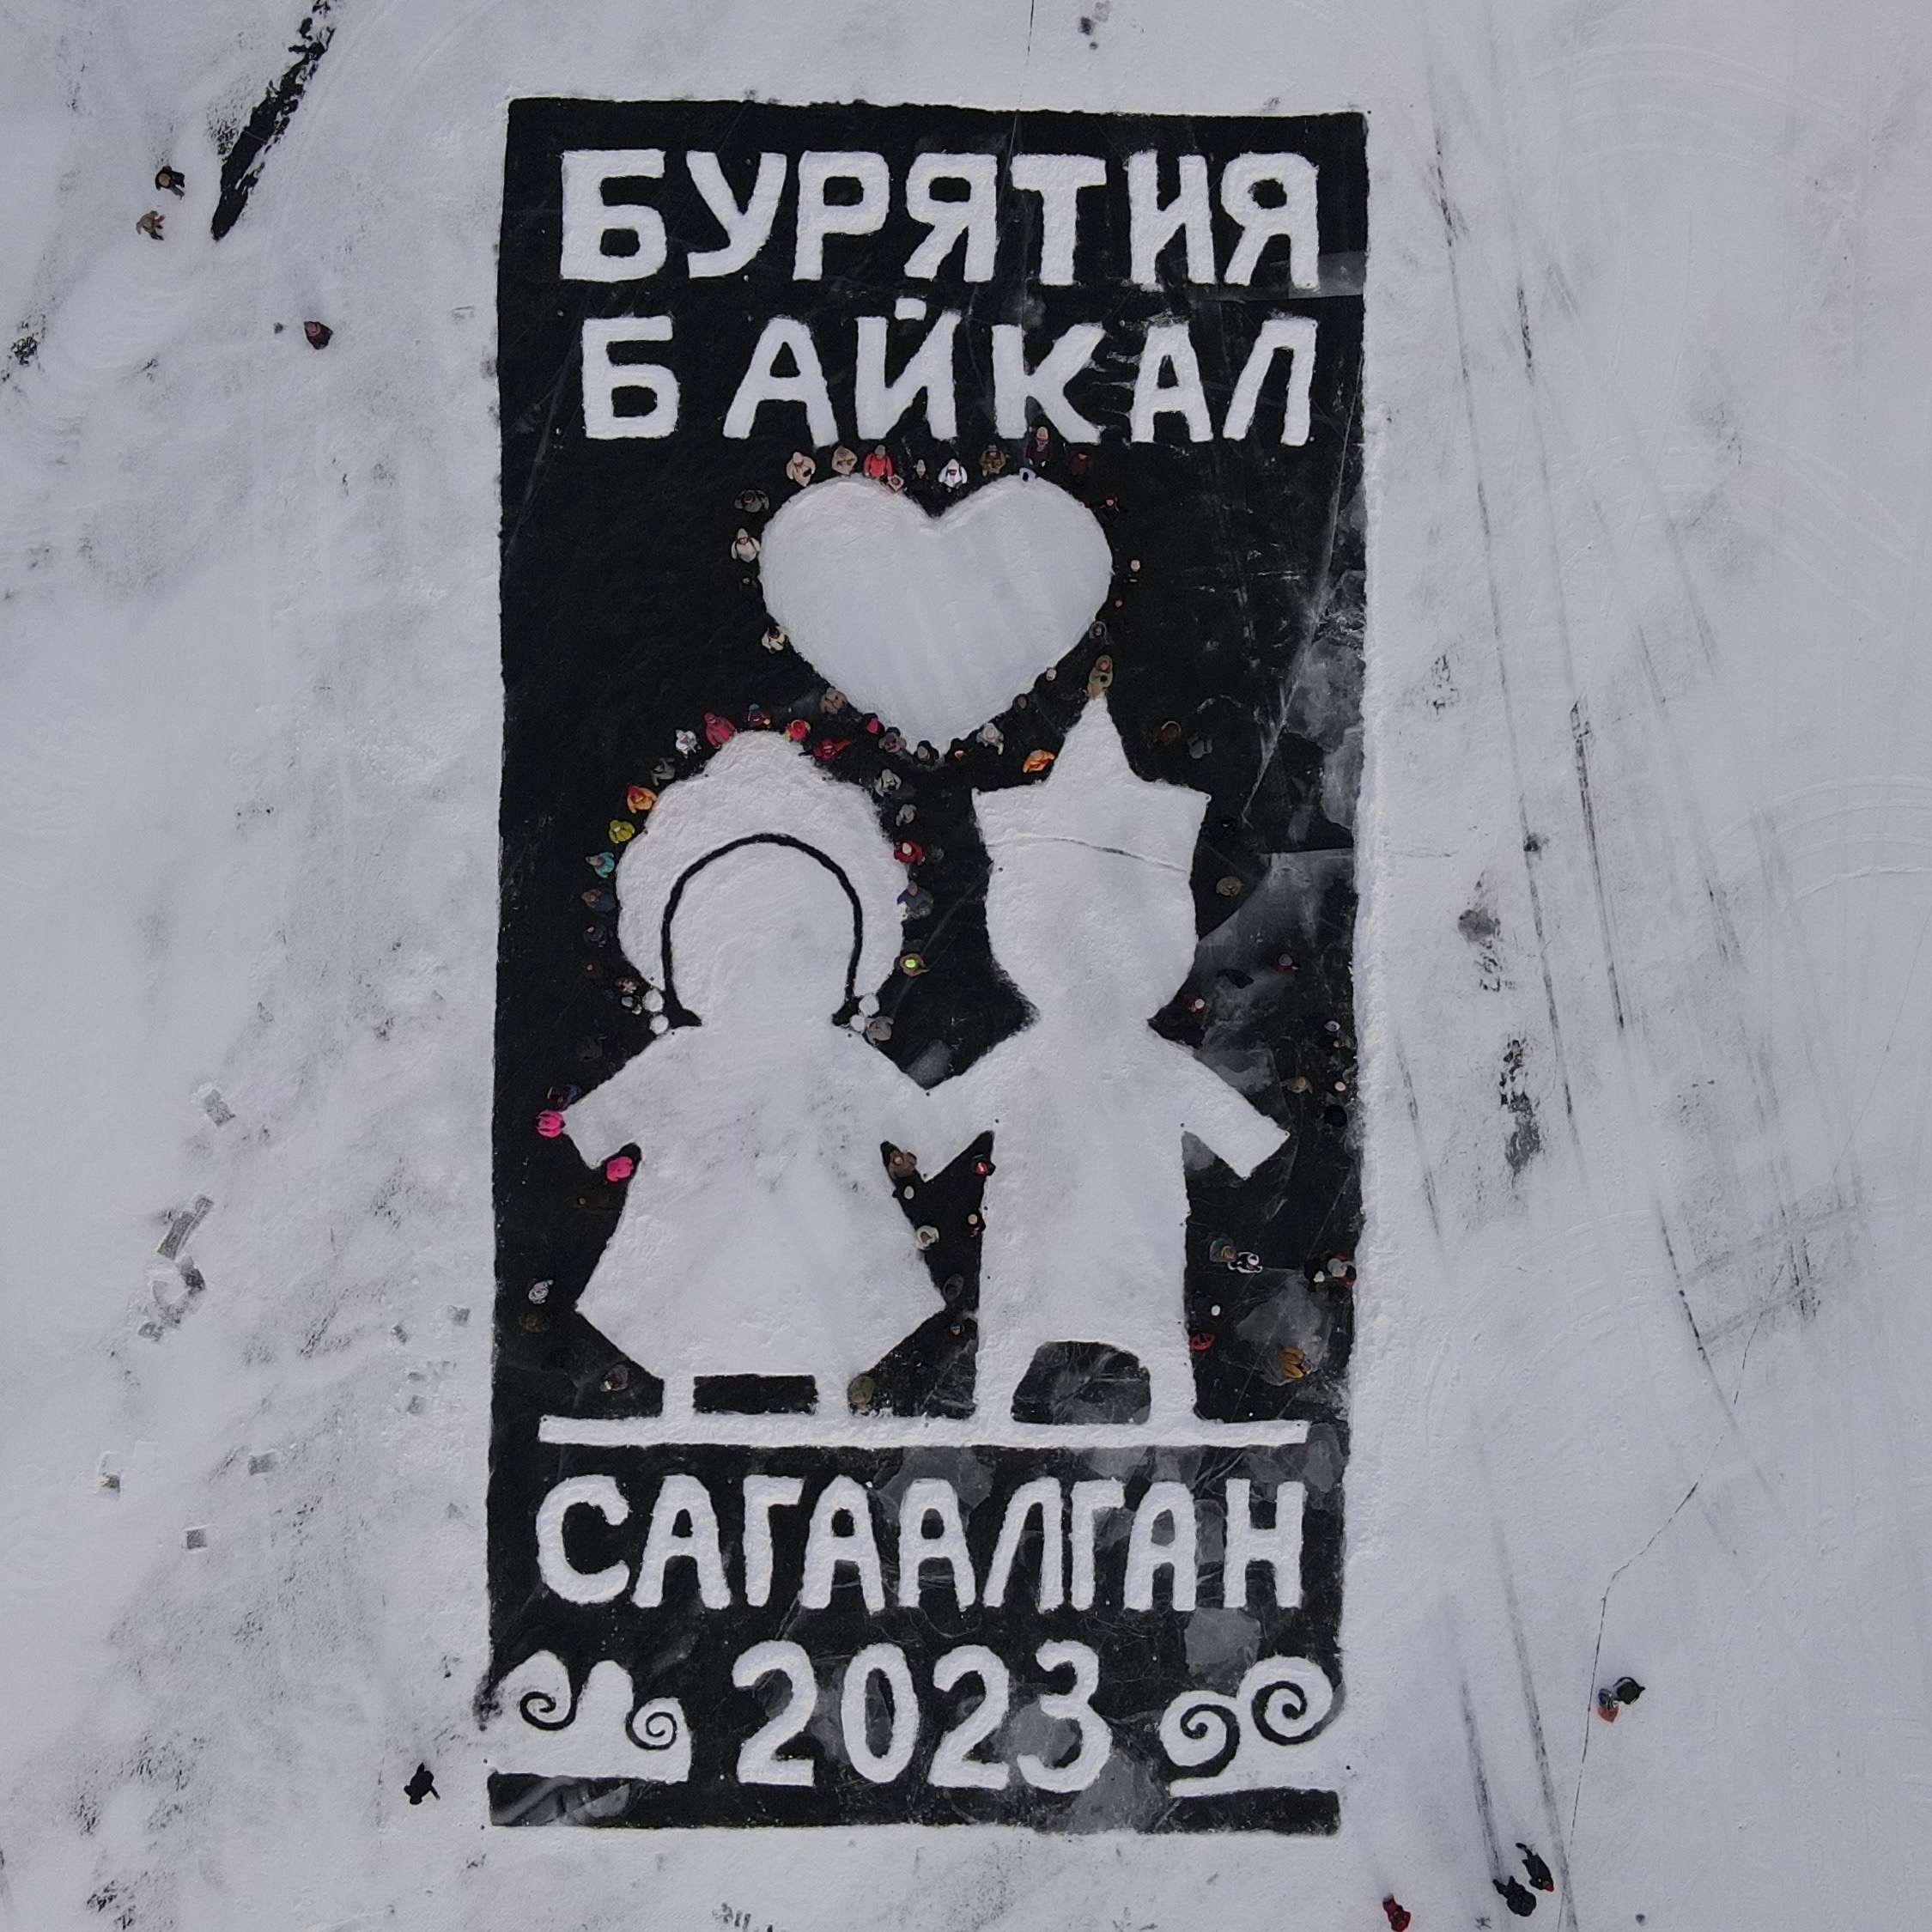 Снежная открытка на льду Байкала